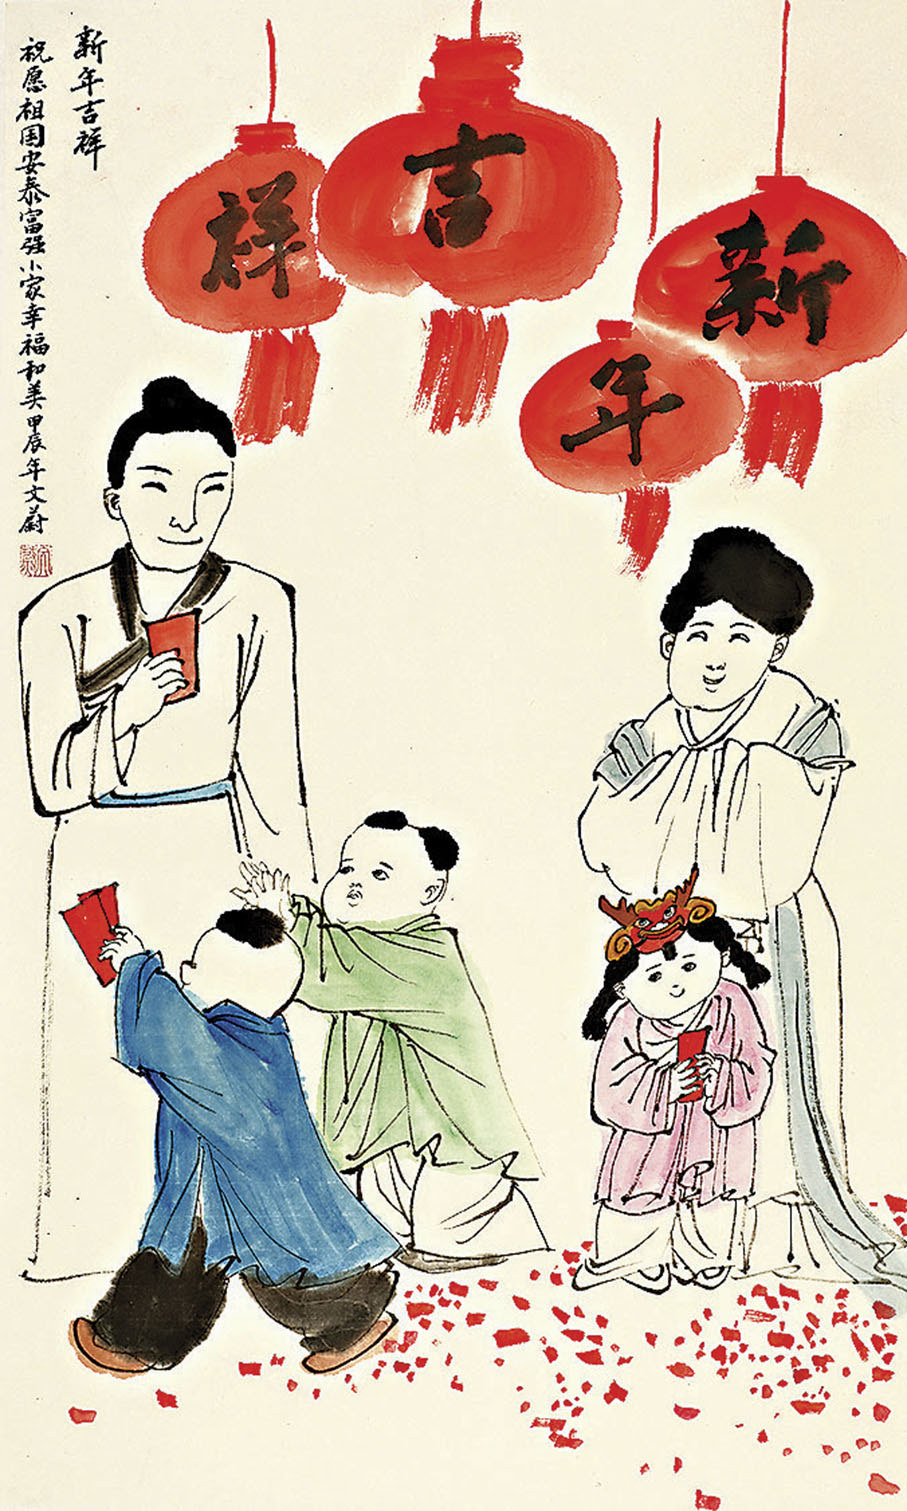 ◆《龍年大吉》描繪了一幅美滿家庭的新春圖景。